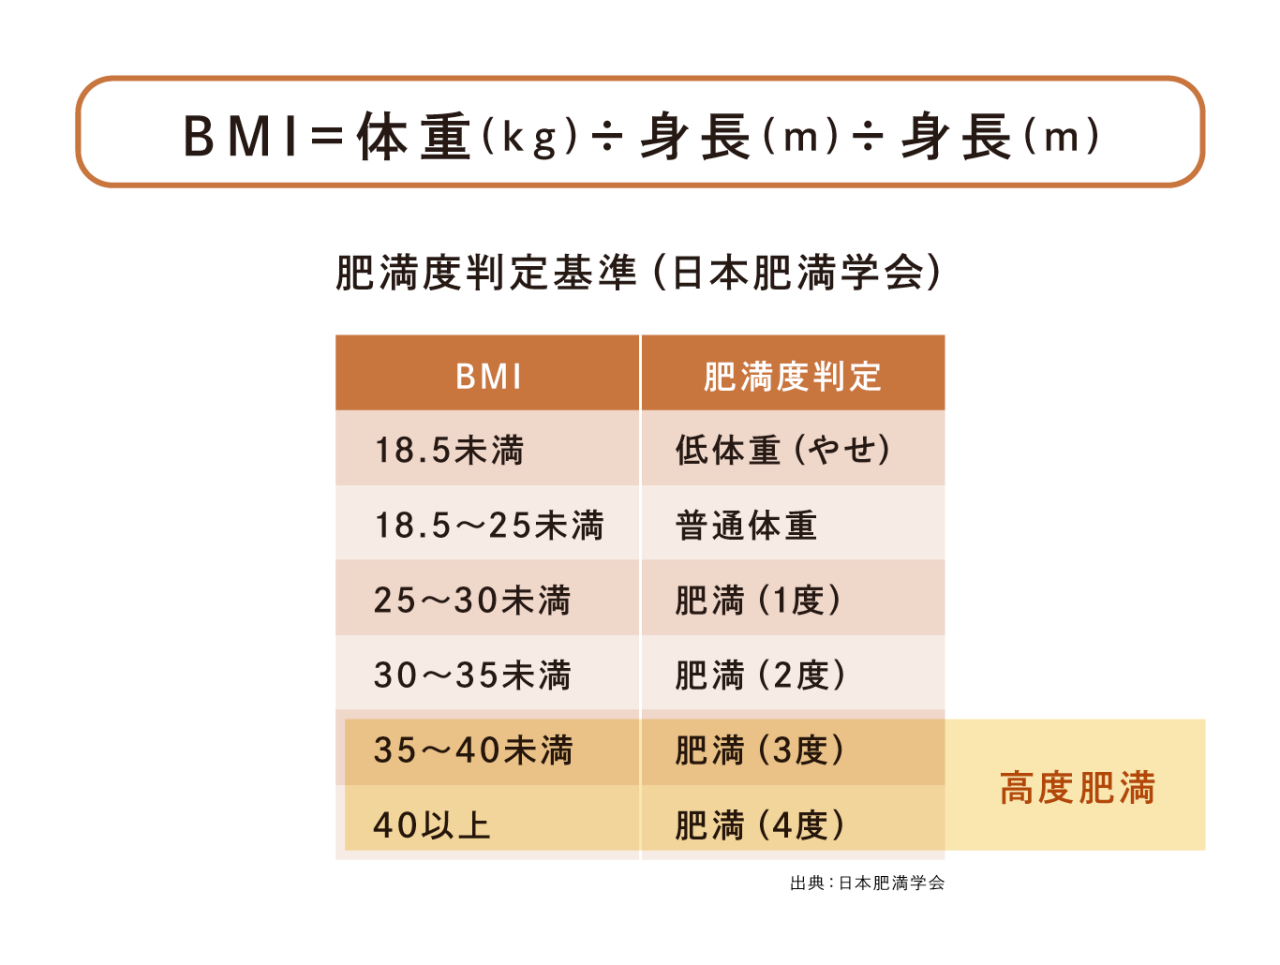 肥満度判定基準（日本肥満学会）の基準表。BMIが18.5未満は低体重（やせ）、18.5～25未満は普通体重、25～30未満は肥満（1度）、30～35未満（2度）、35～40未満は肥満（3度）、40以上は肥満（4度）で、BMI35以上は高度肥満です。